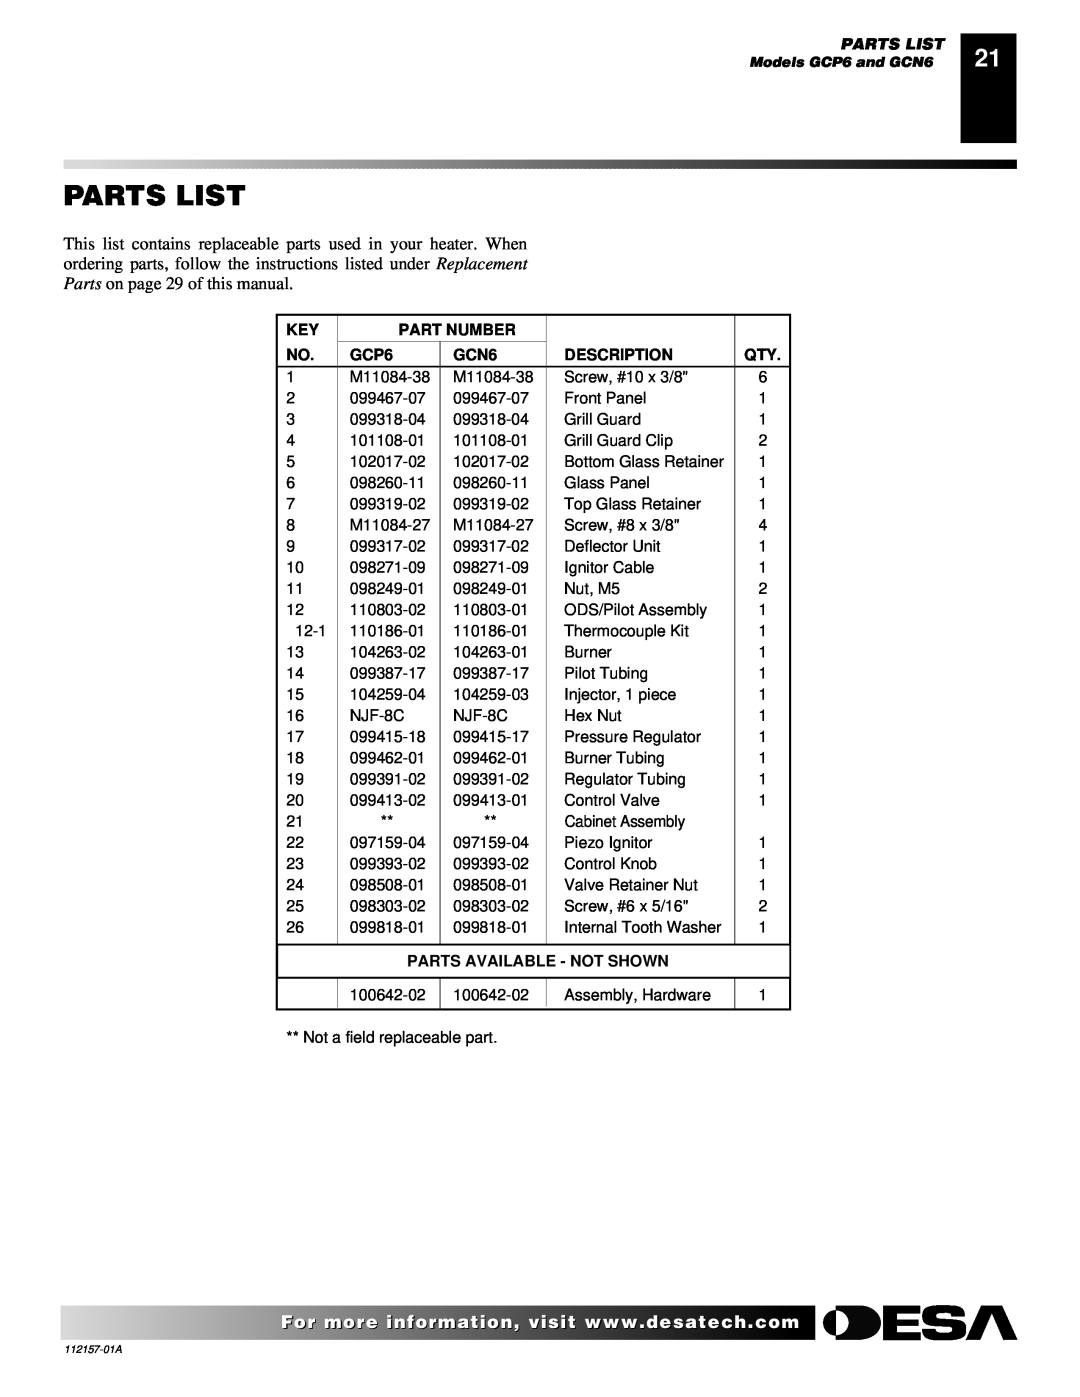 Desa GCP20T, GCP6 GCN10T, GCP10TGCN20T Parts List, Part Number, GCN6, Description, Parts Available - Not Shown 